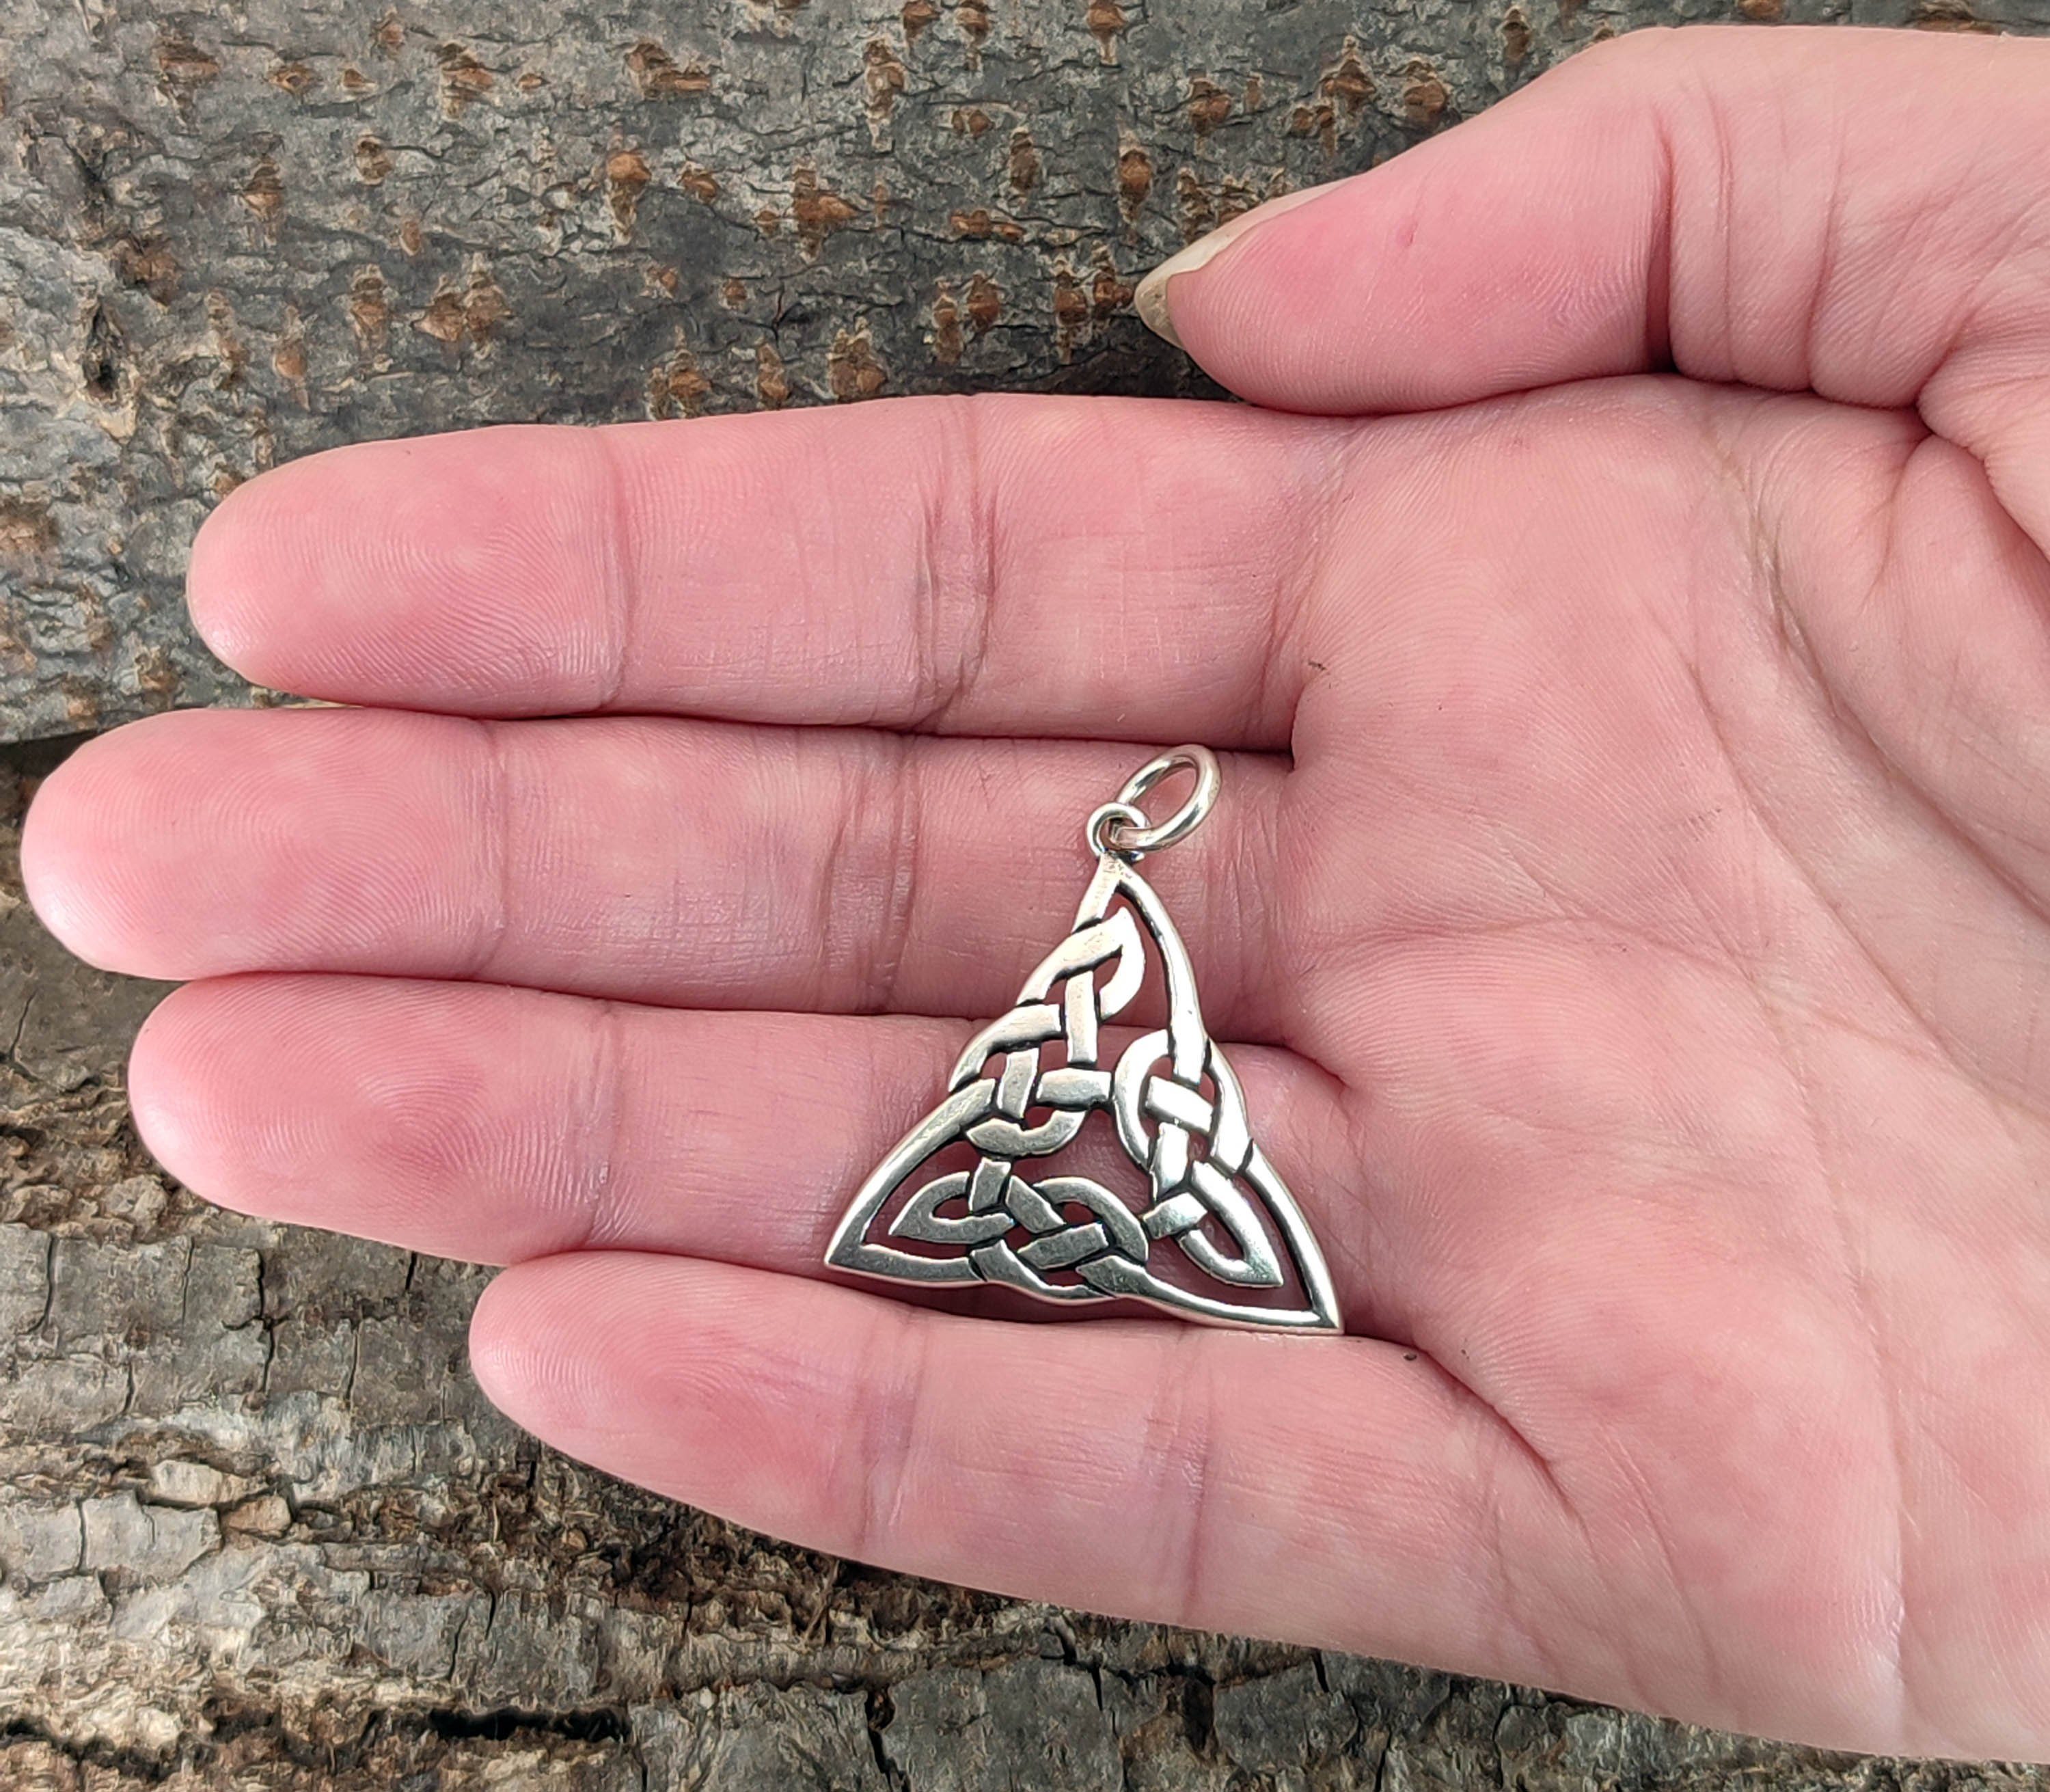 Leather Kiss Silber 925 Anhänger Knoten keltischer of Kettenanhänger Dreieck Keltenknoten